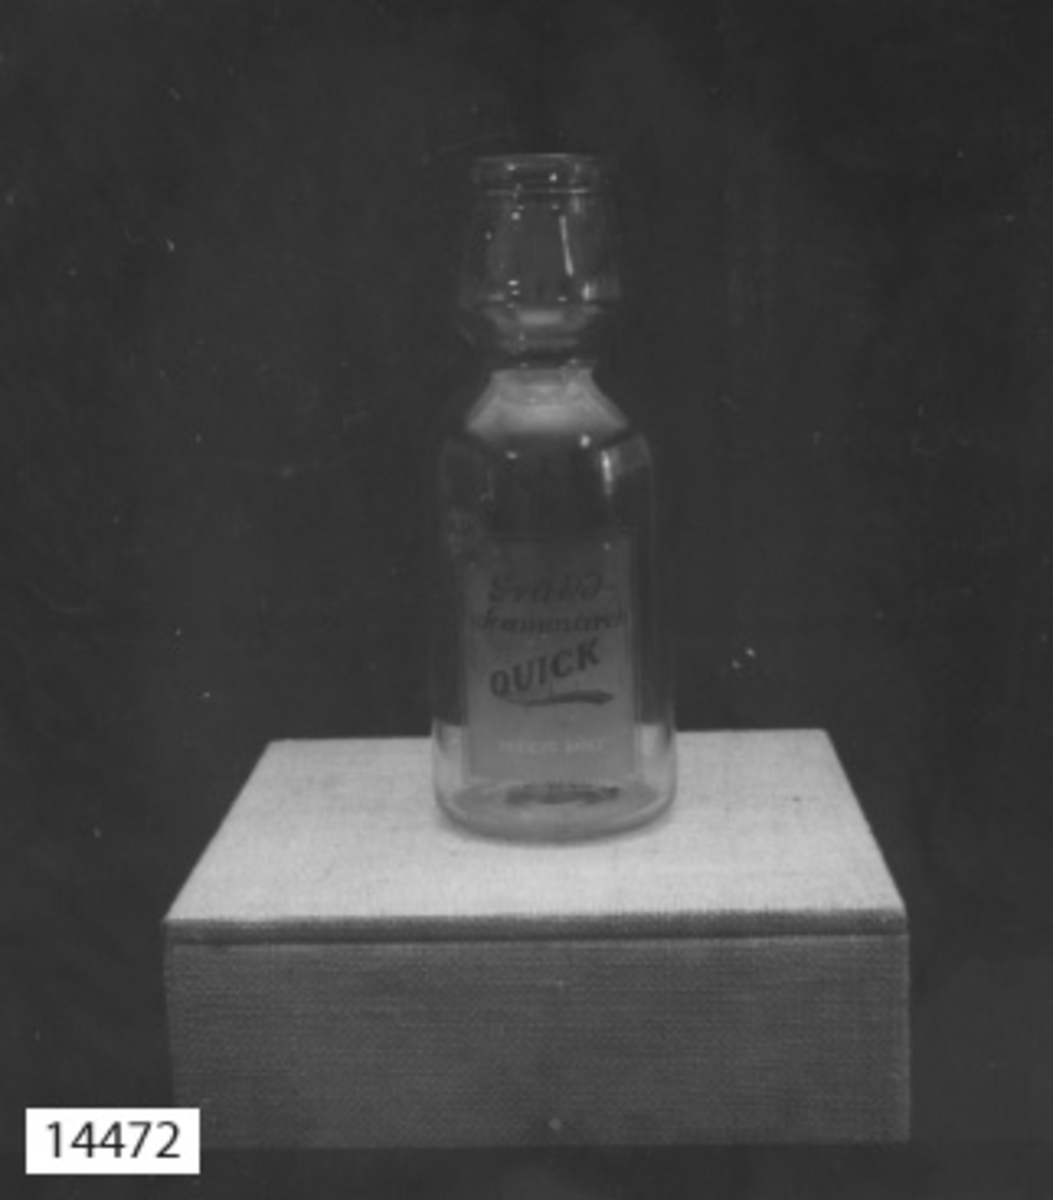 Gräddskummare, glas. har formen av en flaska med en "gräddhals". textat på glaset: Gräddskummare Quick. Patent sökt. M & W  A.-B. STOCKHOLM.